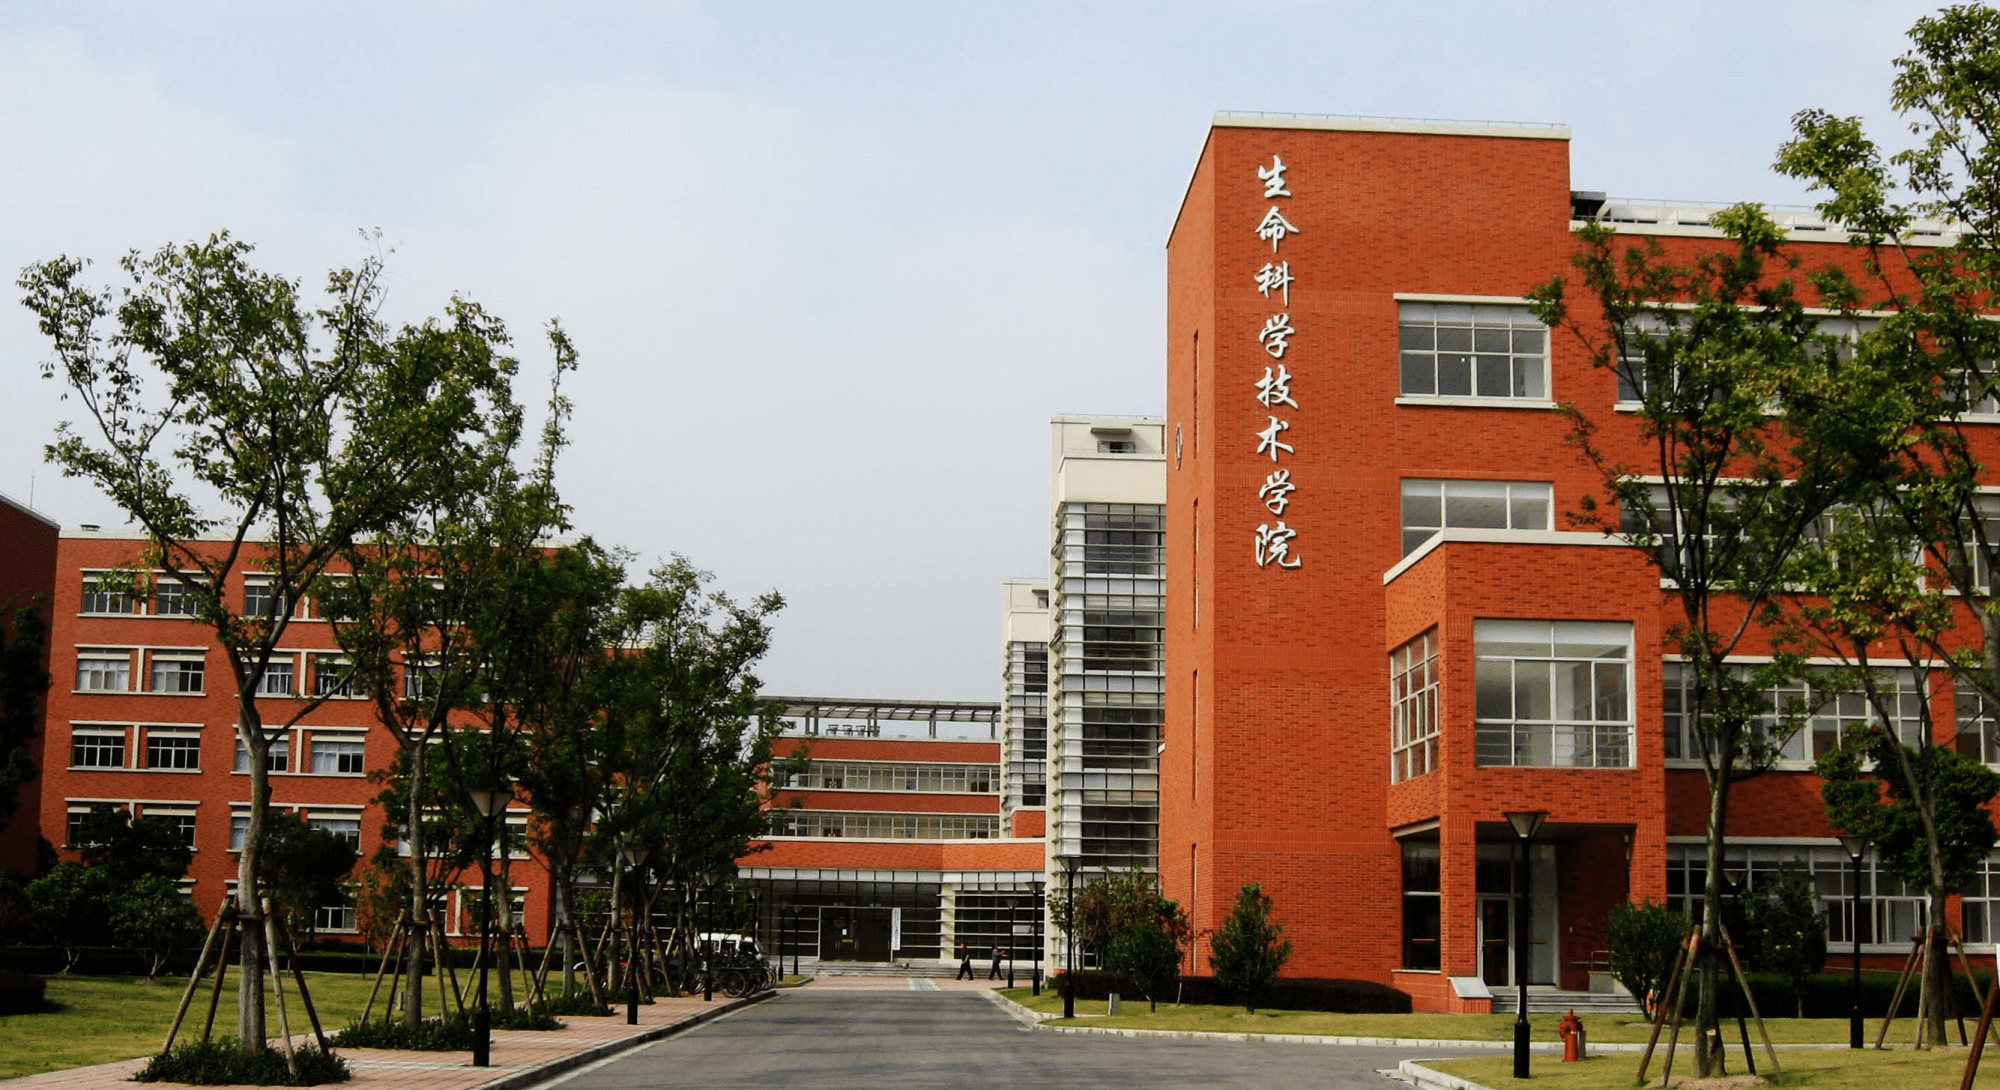 上海工程技术大学 上海应用技术大学 上海第二工业大学 哪一个较好一点呢？ - 知乎